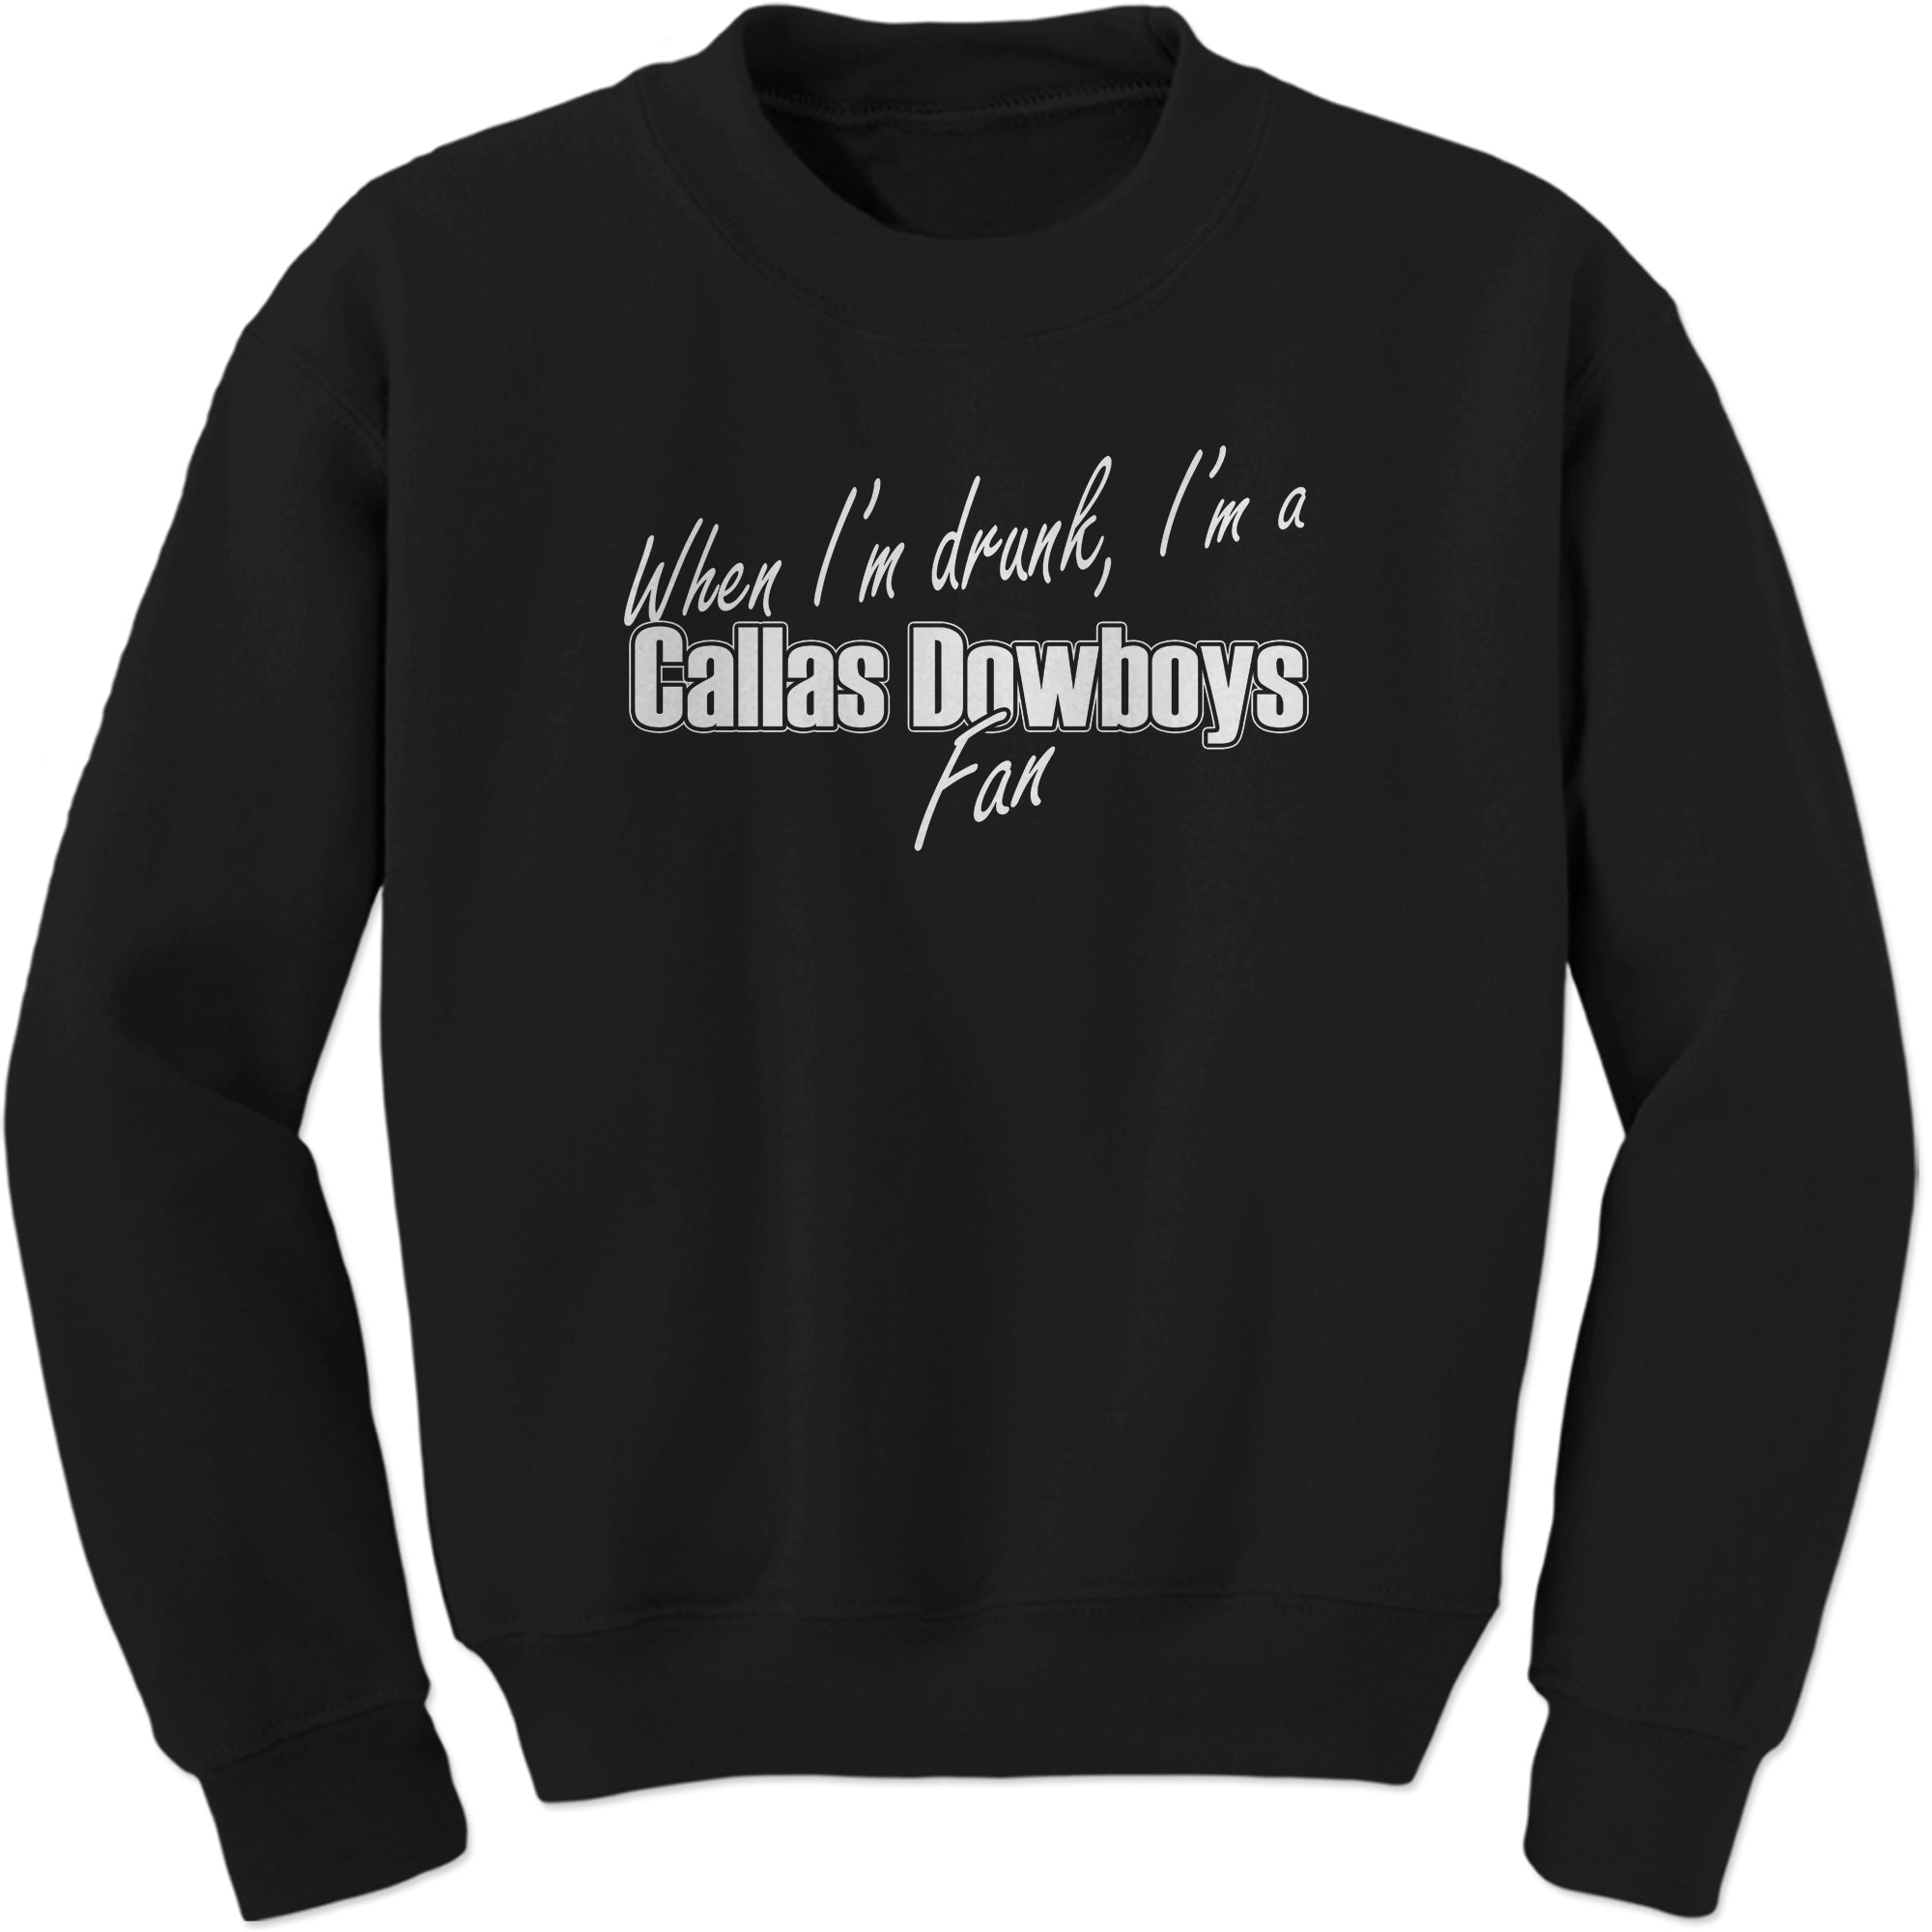 Callas Dowboys Funny Parody Sweatshirt